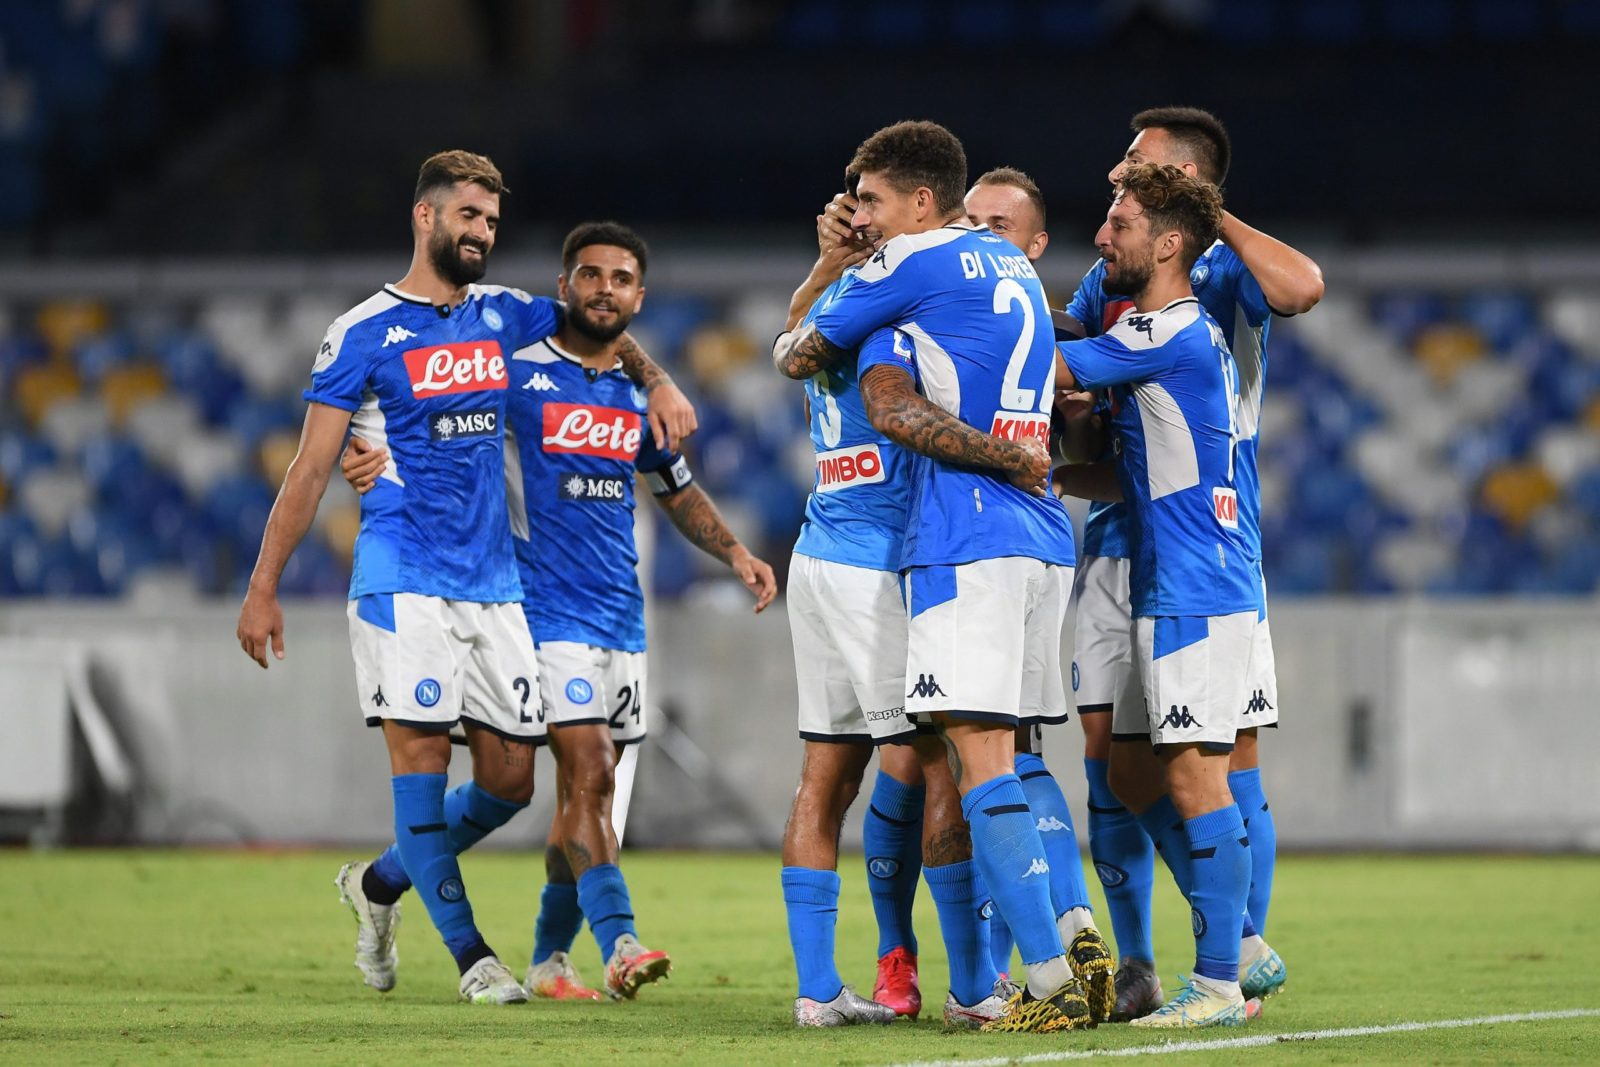 La Lega Serie A conferma: “Juve-Napoli si gioca”. Gli azzurri non partono, sarà 3-0 a tavolino